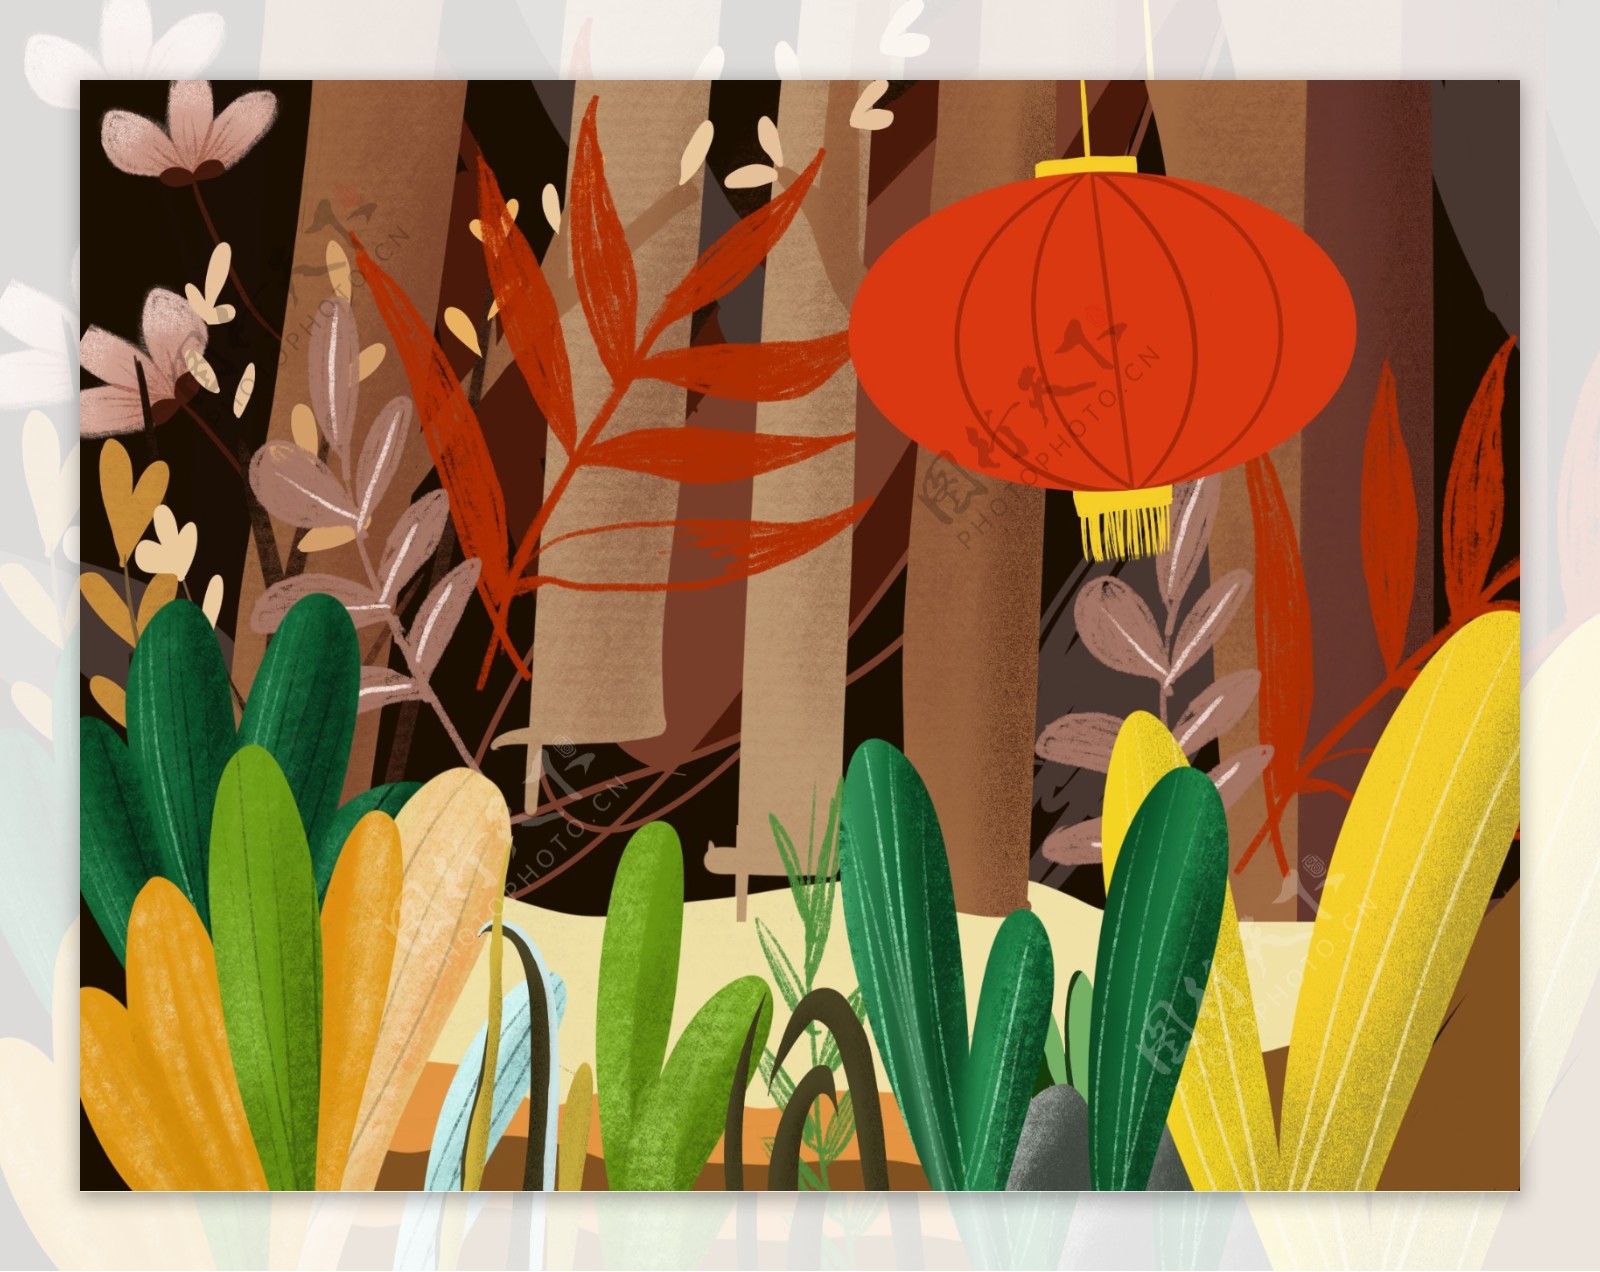 手绘清新春季植物背景设计